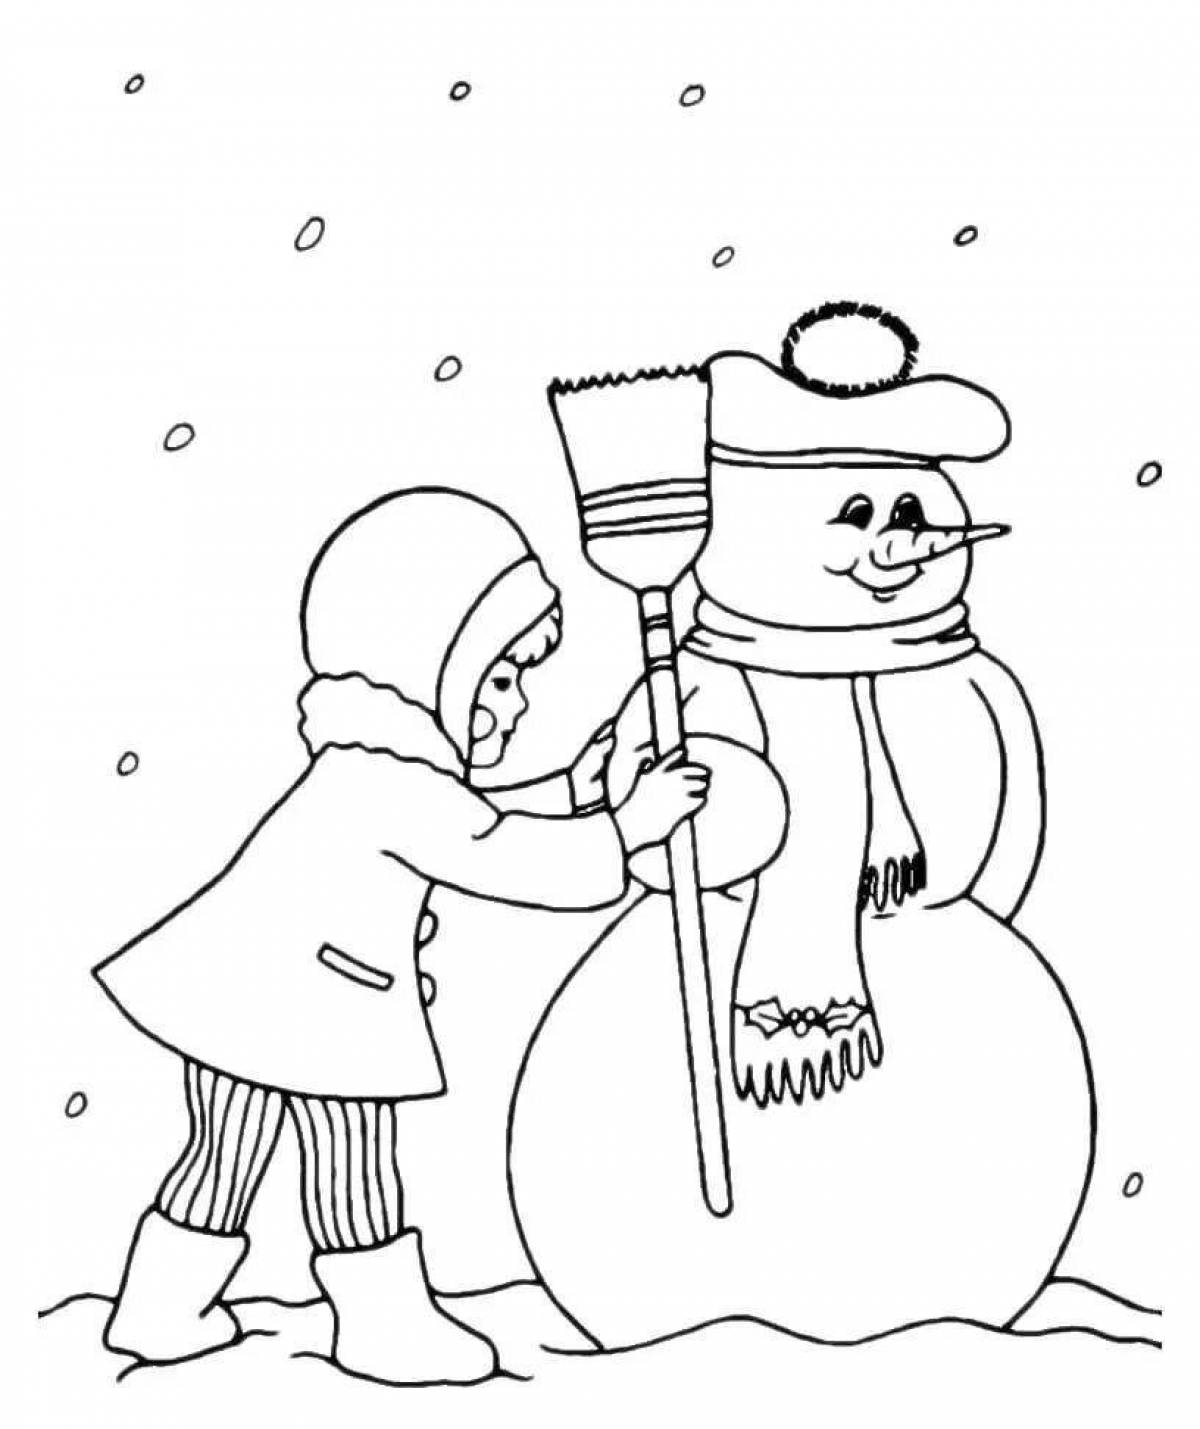 Великолепная раскраска снеговик для детей